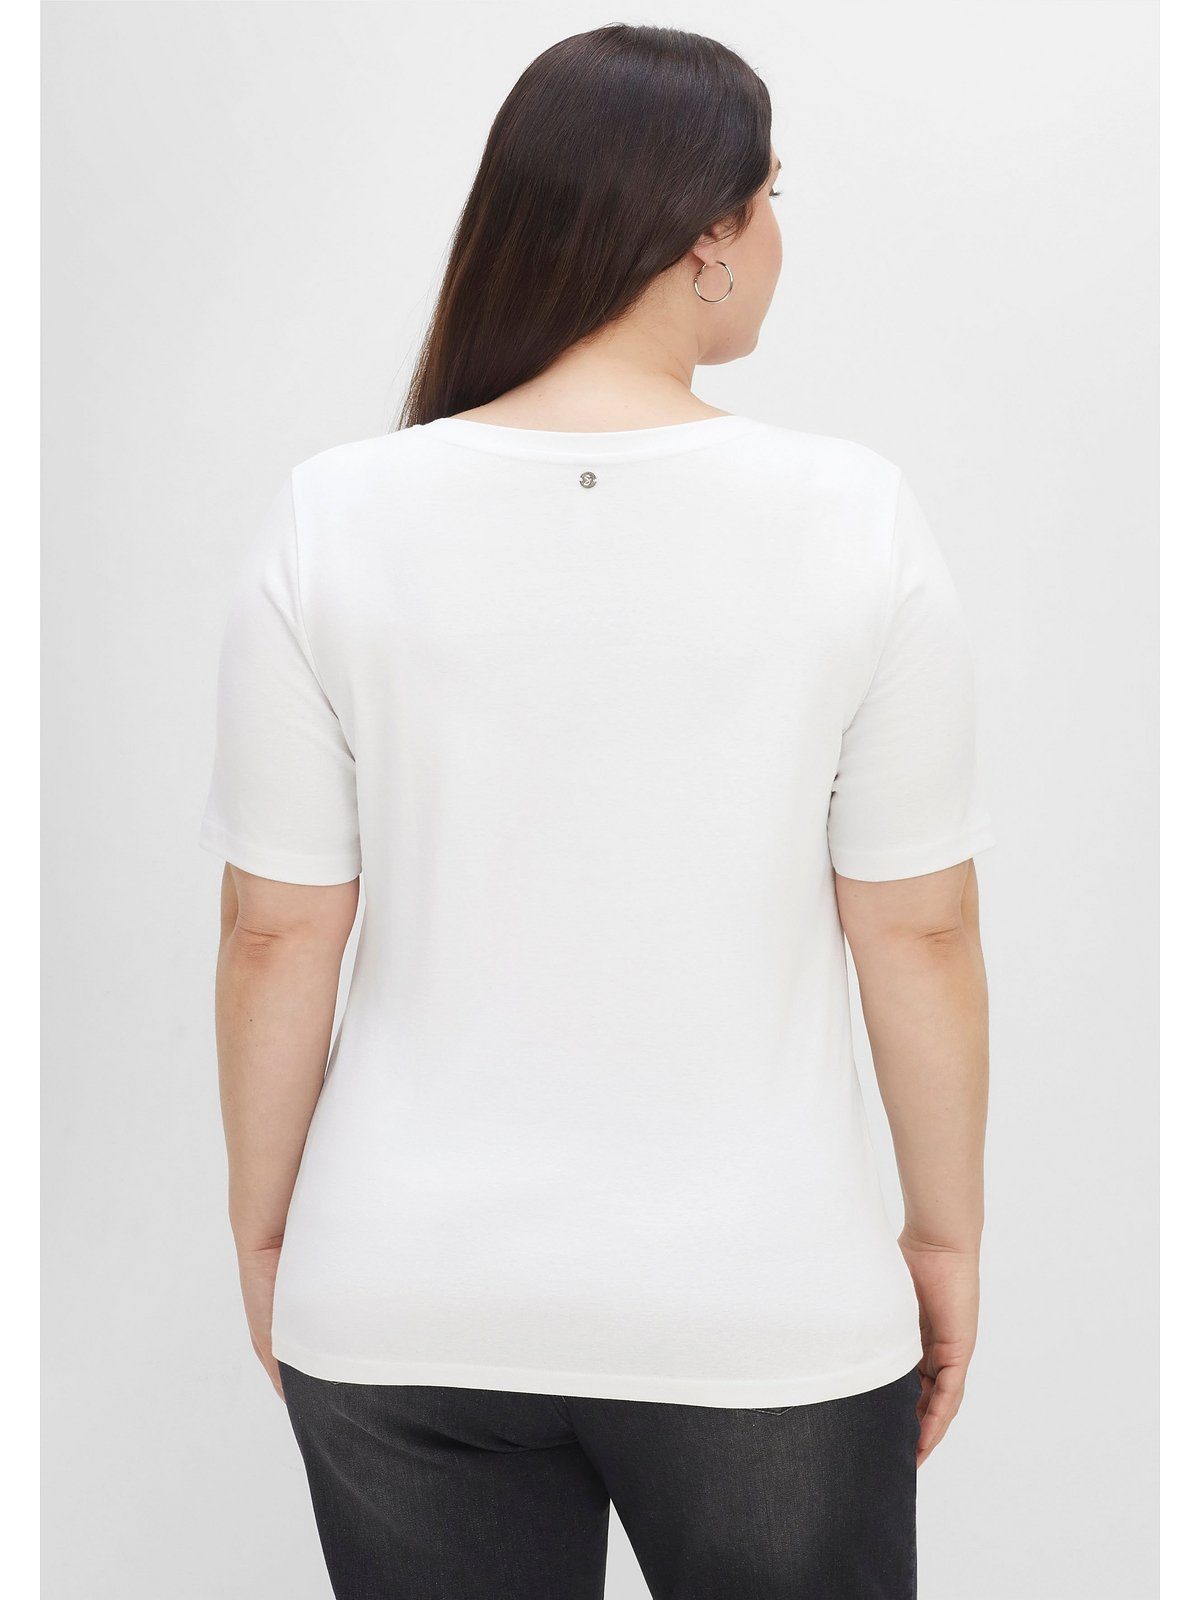 Sheego T-Shirt Große Größen in weiß Rippstruktur, Knopfleiste mit